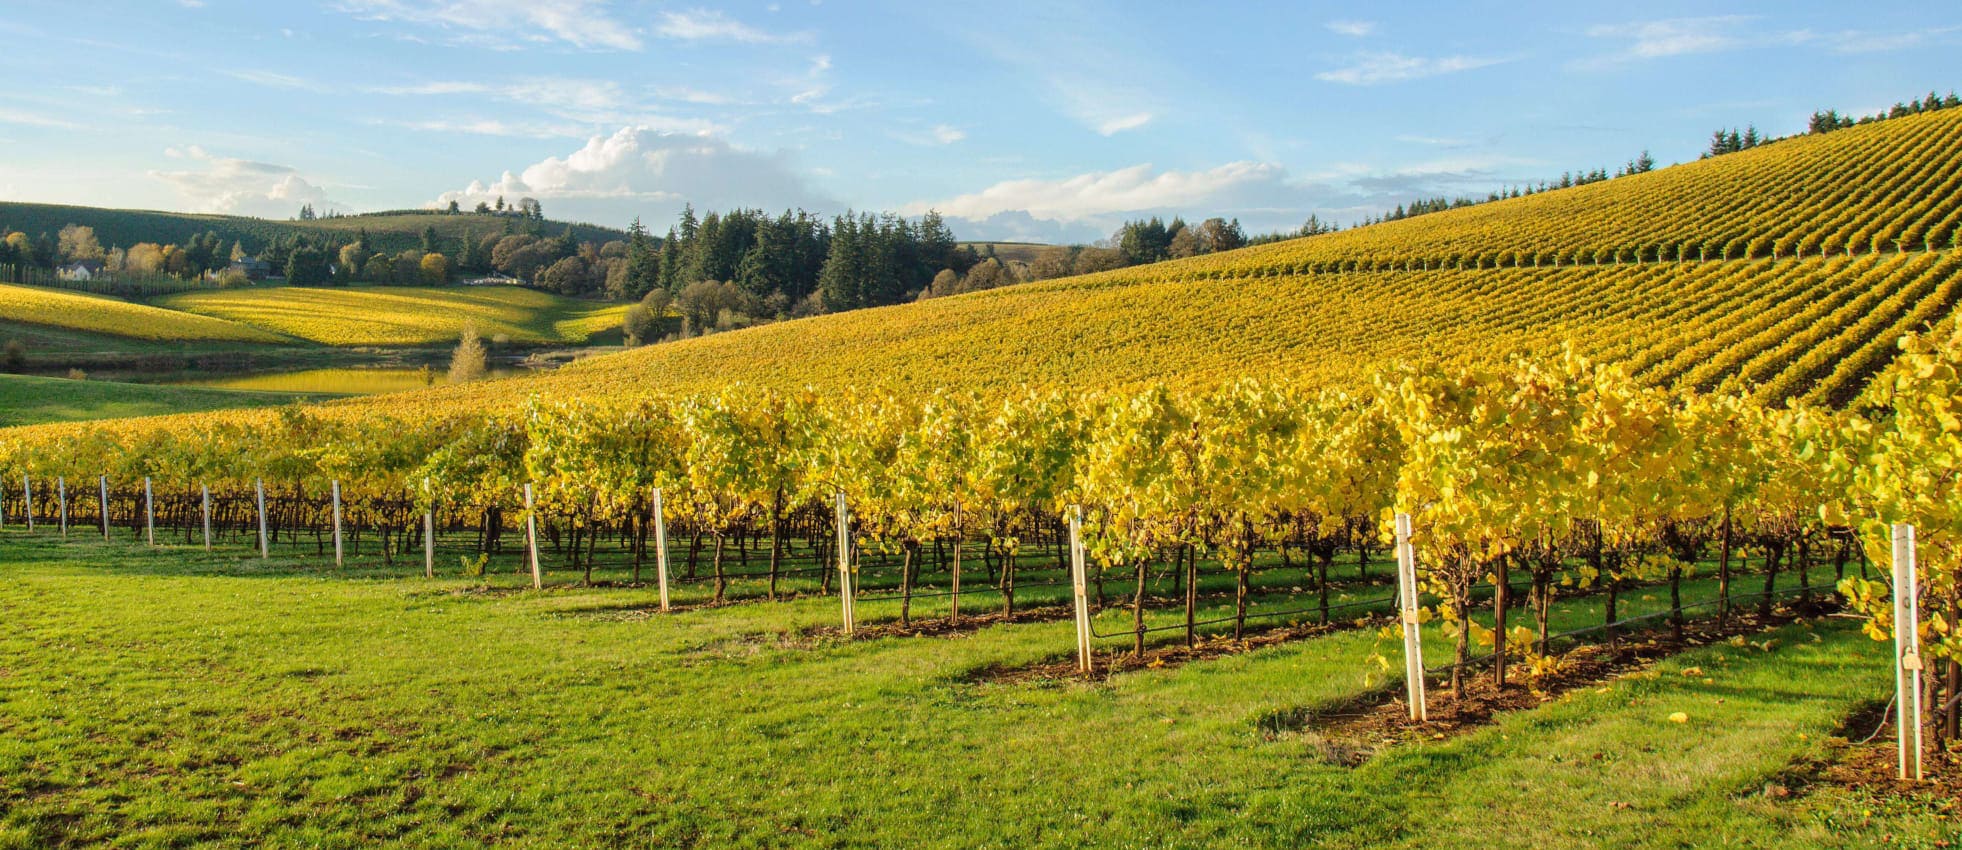 Large vineyard